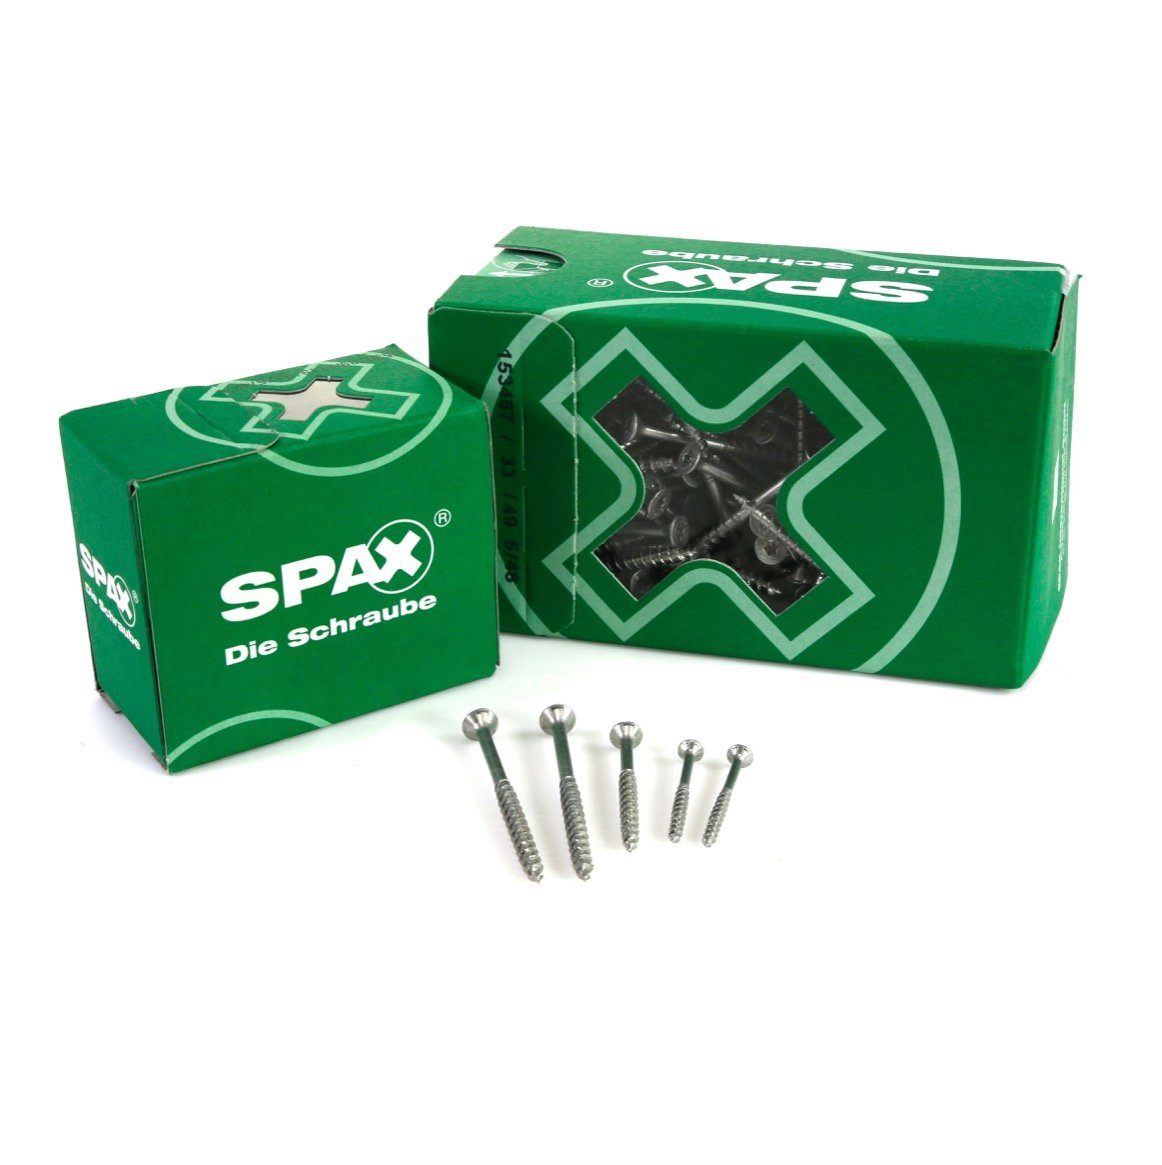 SPAX Schraube SPAX Universalschraube 5,0 TORX mm 500 Stk. 4Cut-Spitze Senkkopf x Teilgewinde T-STAR 50 WIROX 0191010500505 plus T20